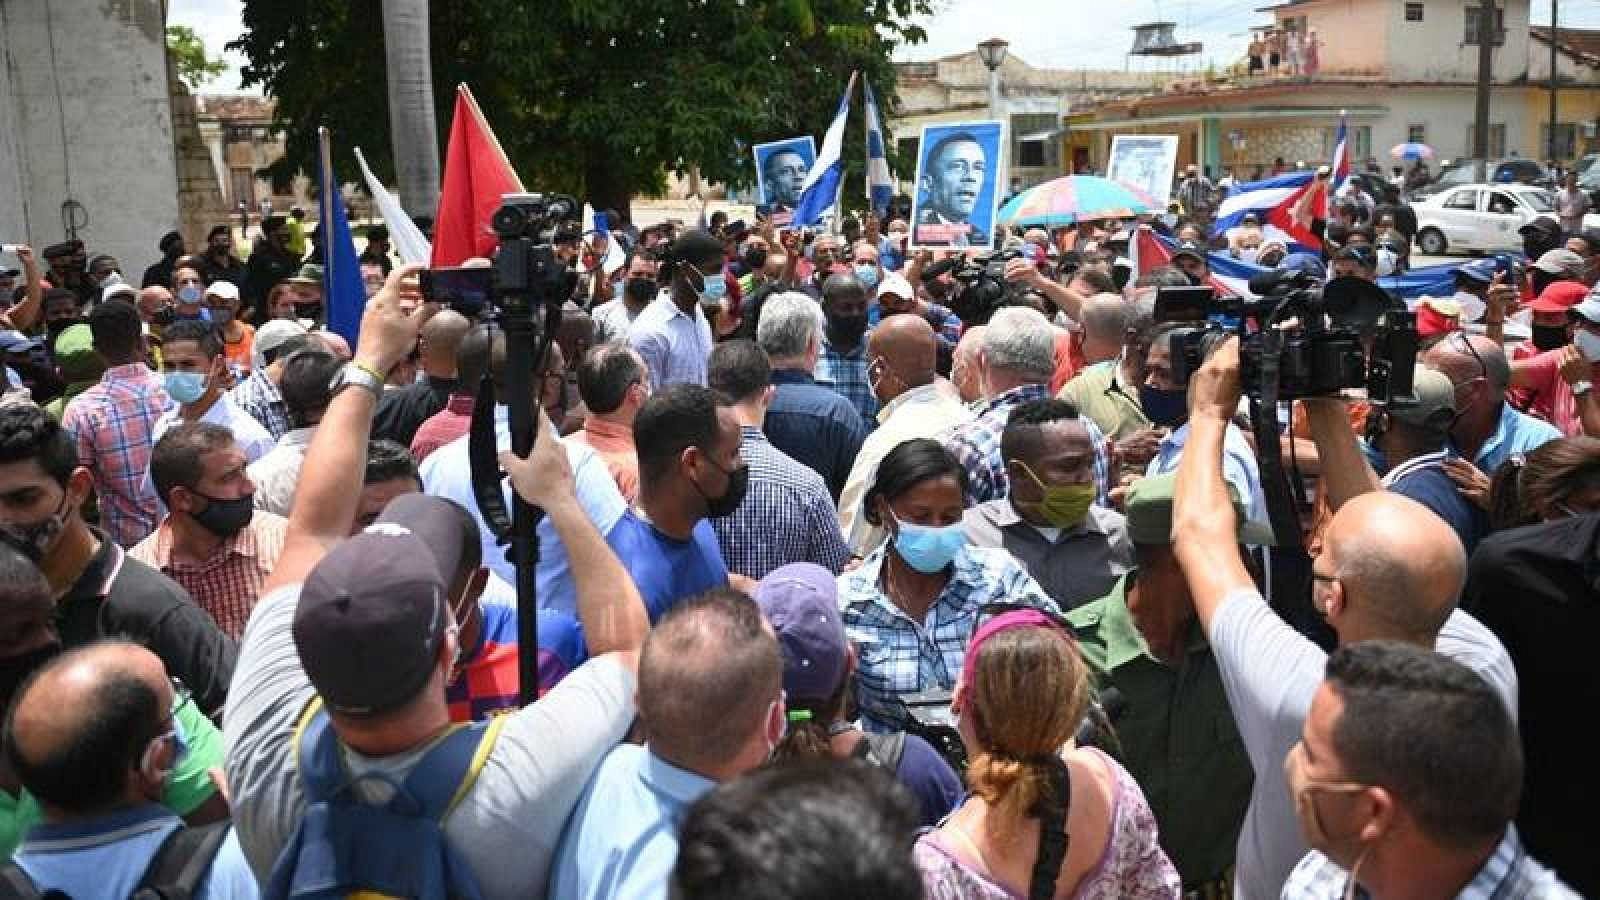 Miles de personas toman las calles en Cuba en unas protestas históricas contra el régimen - Ver ahora